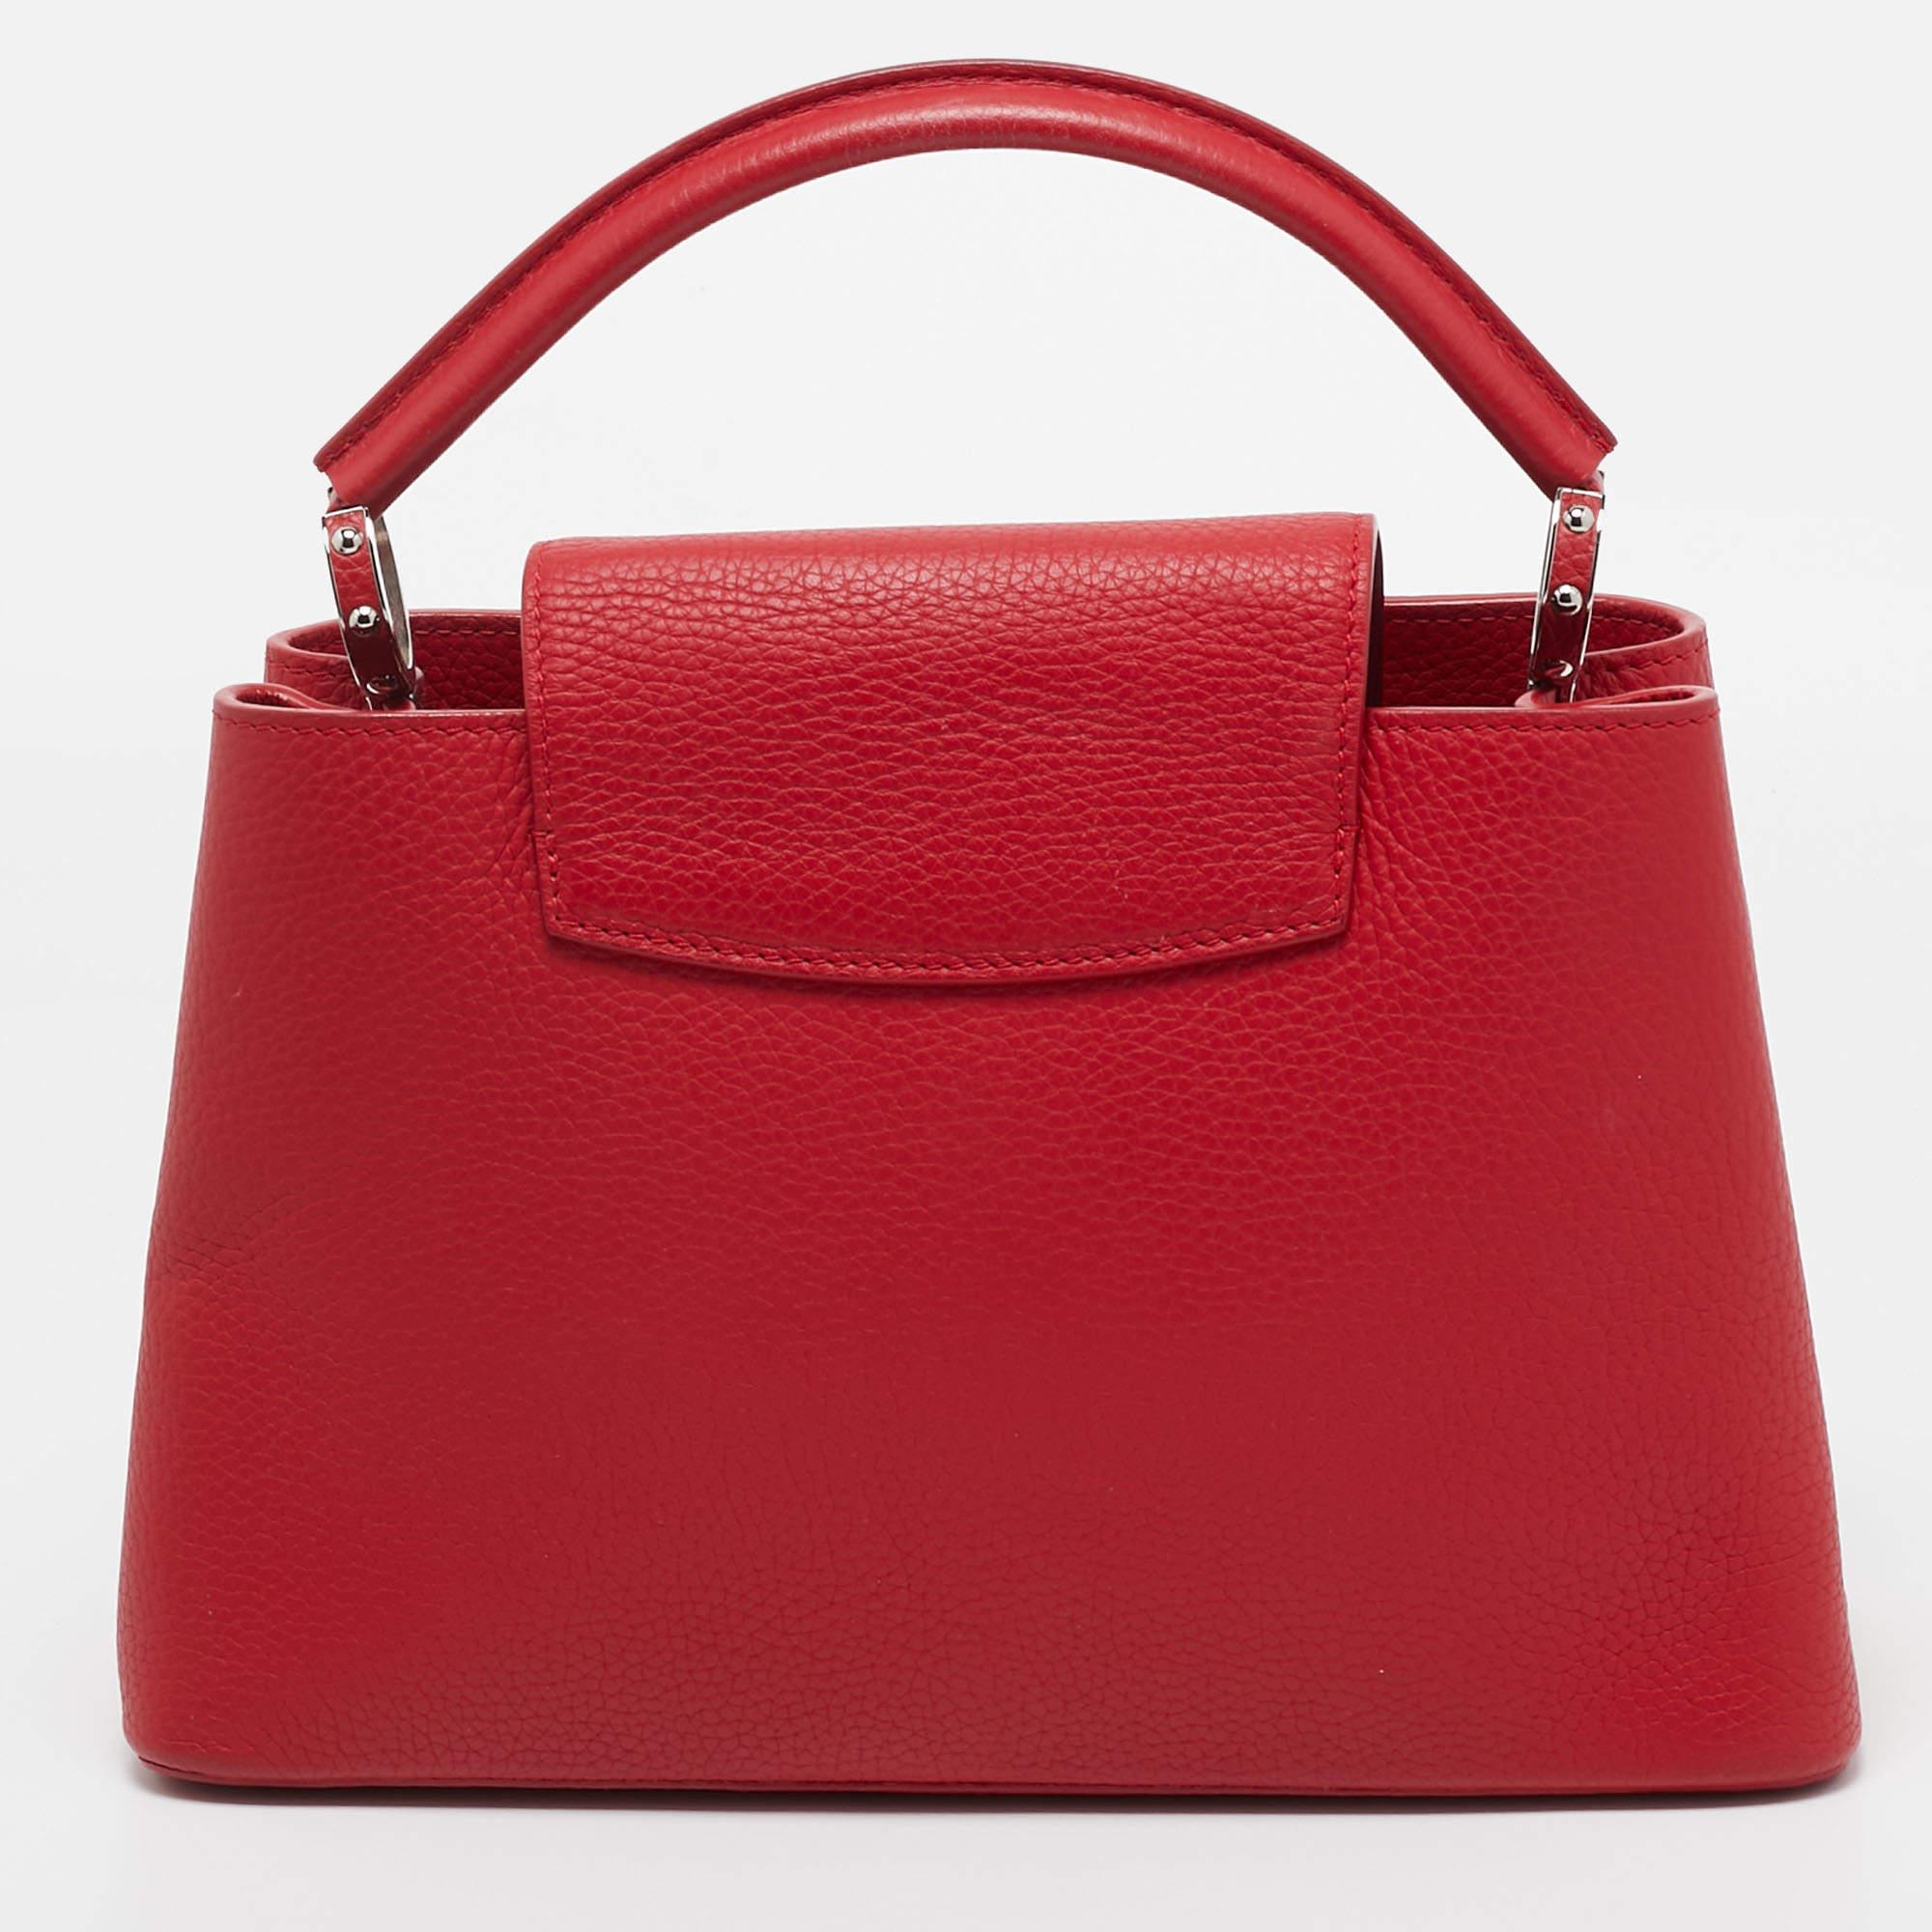 Die Louis Vuitton Capucines Tasche ist ein luxuriöses Accessoire aus exquisitem rubinrotem Taurillon-Leder. Sie verfügt über einen raffinierten Klappverschluss, doppelte Henkel und ein markantes LV-Monogramm. Das Innere ist mit feinem Leder